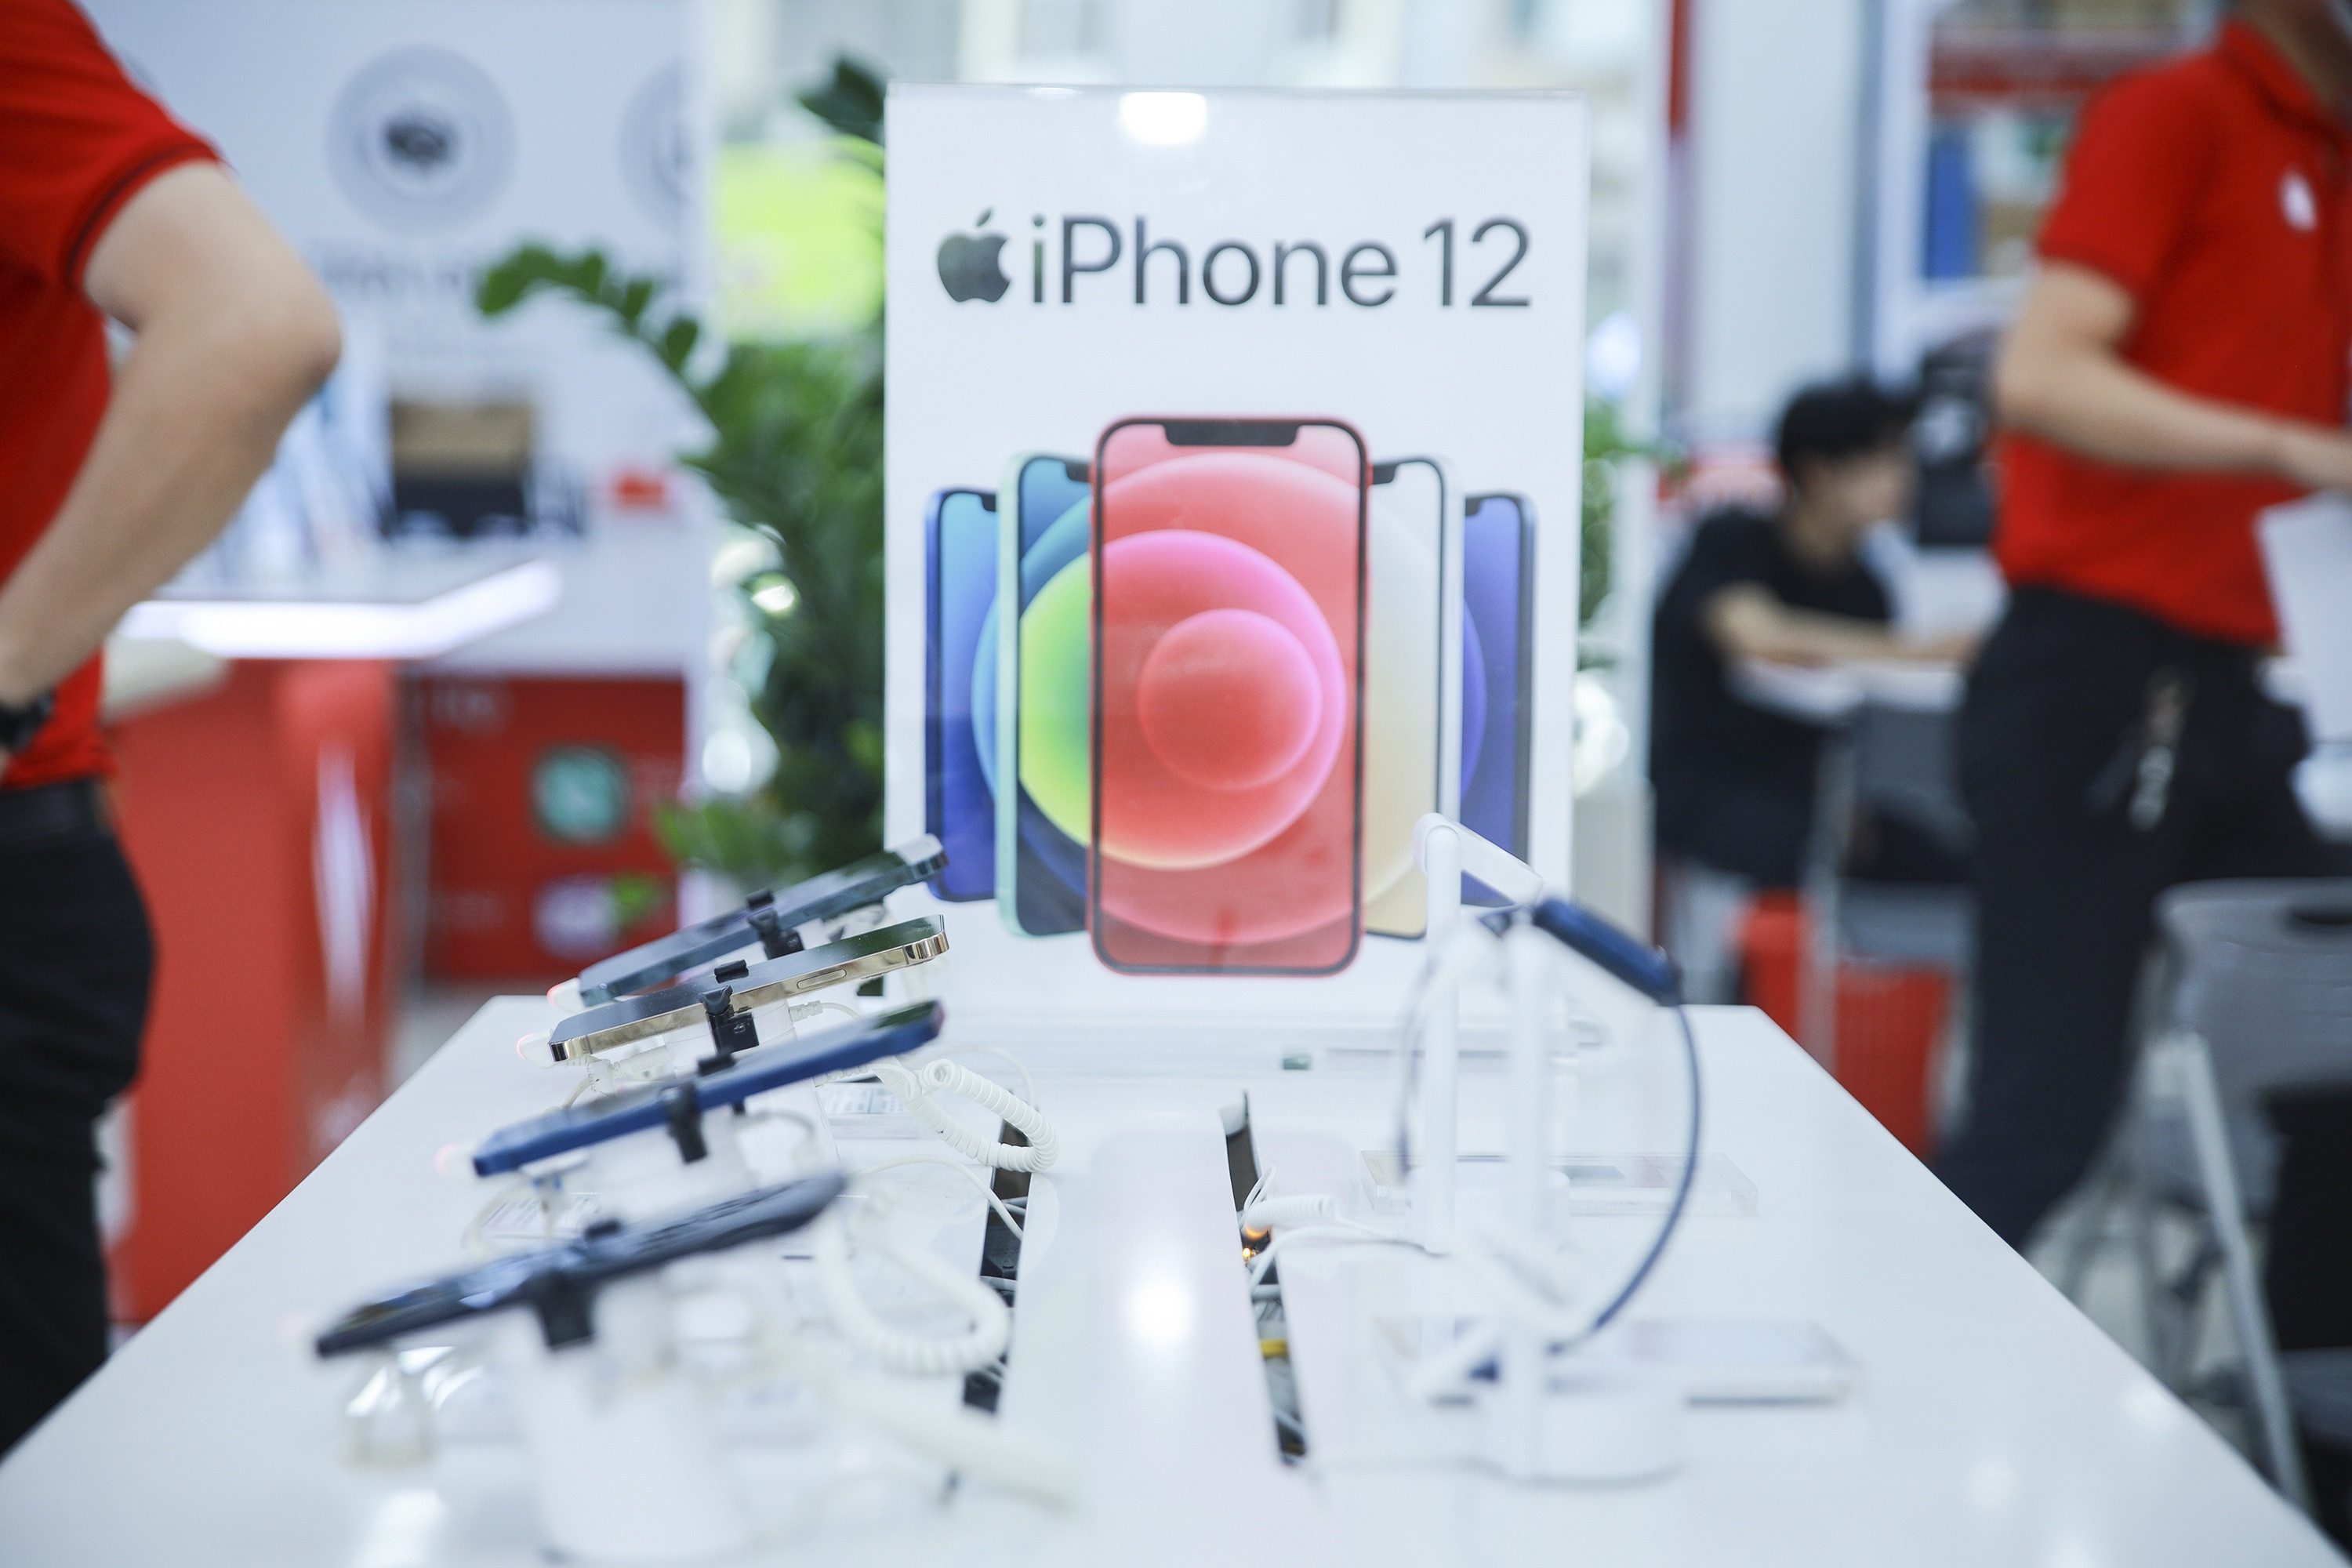 iPhone đời cũ liên tục giảm giá tại Việt Nam - 2